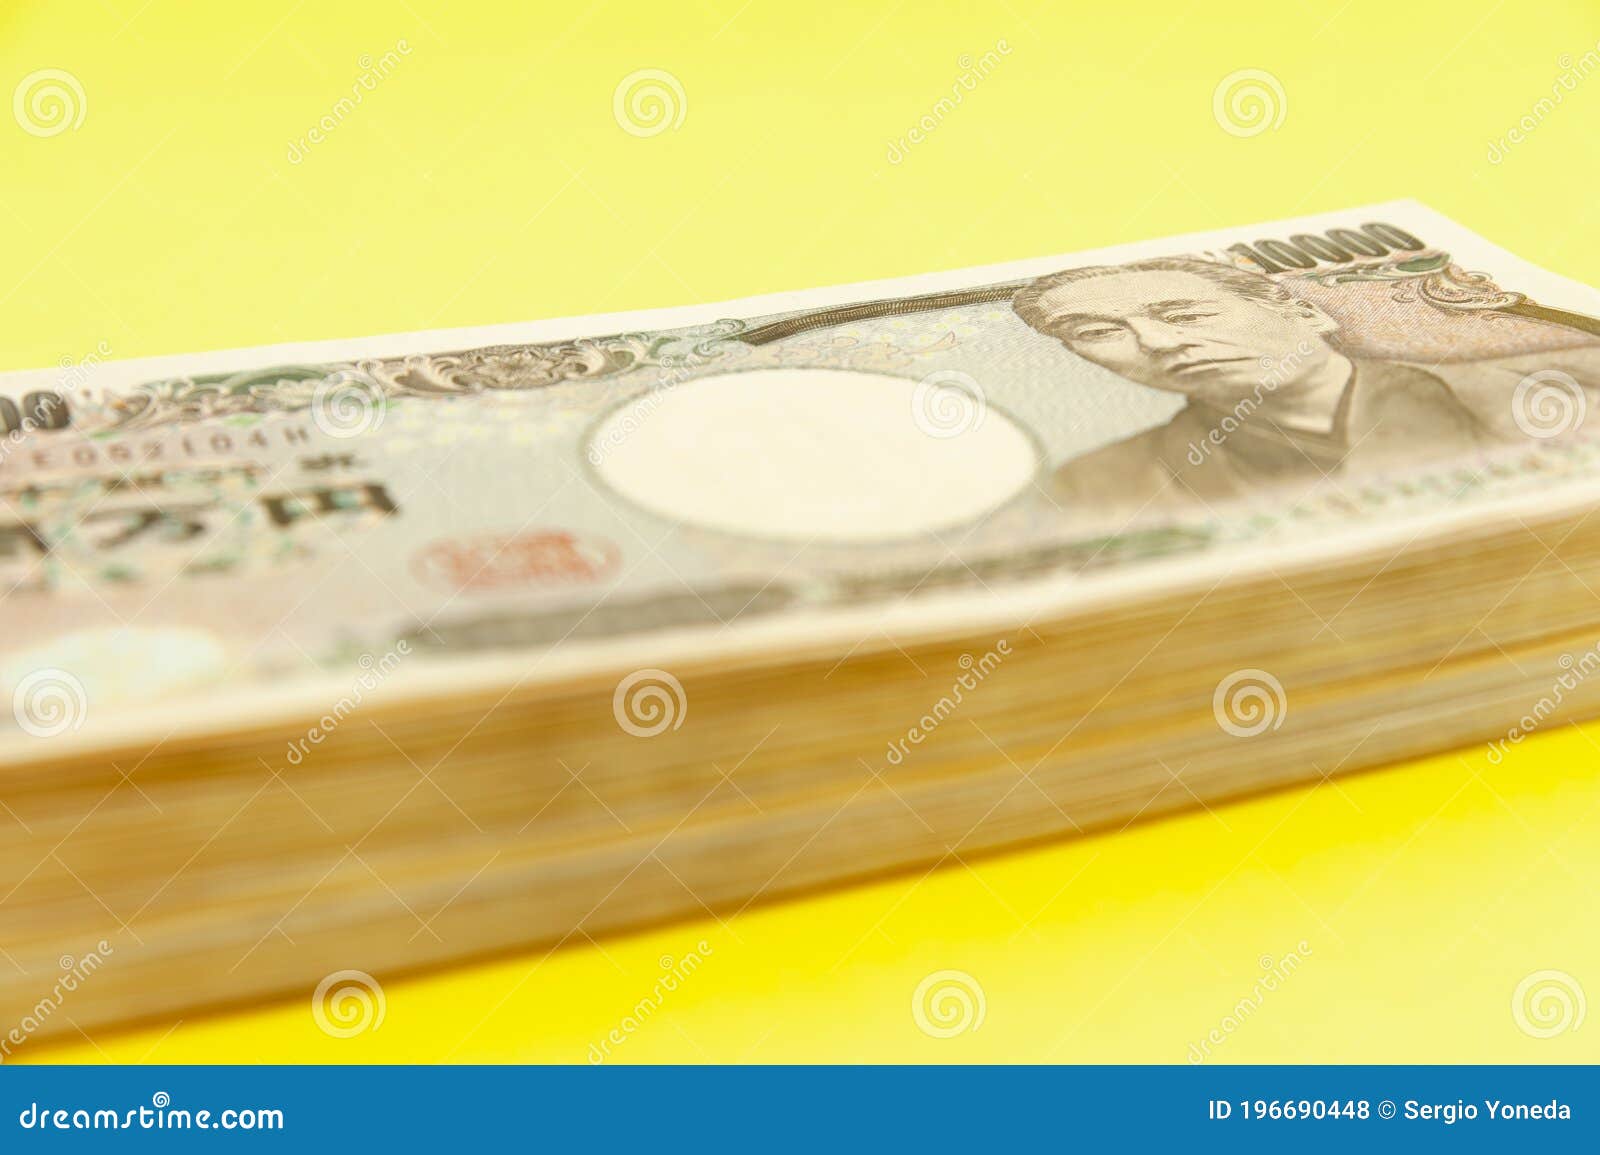 堆日本一万日元钞票 库存照片. 图片 包括有 商业, 一千, 现金, 日本, 日语, 节省额, 财务, 货币 - 69087778